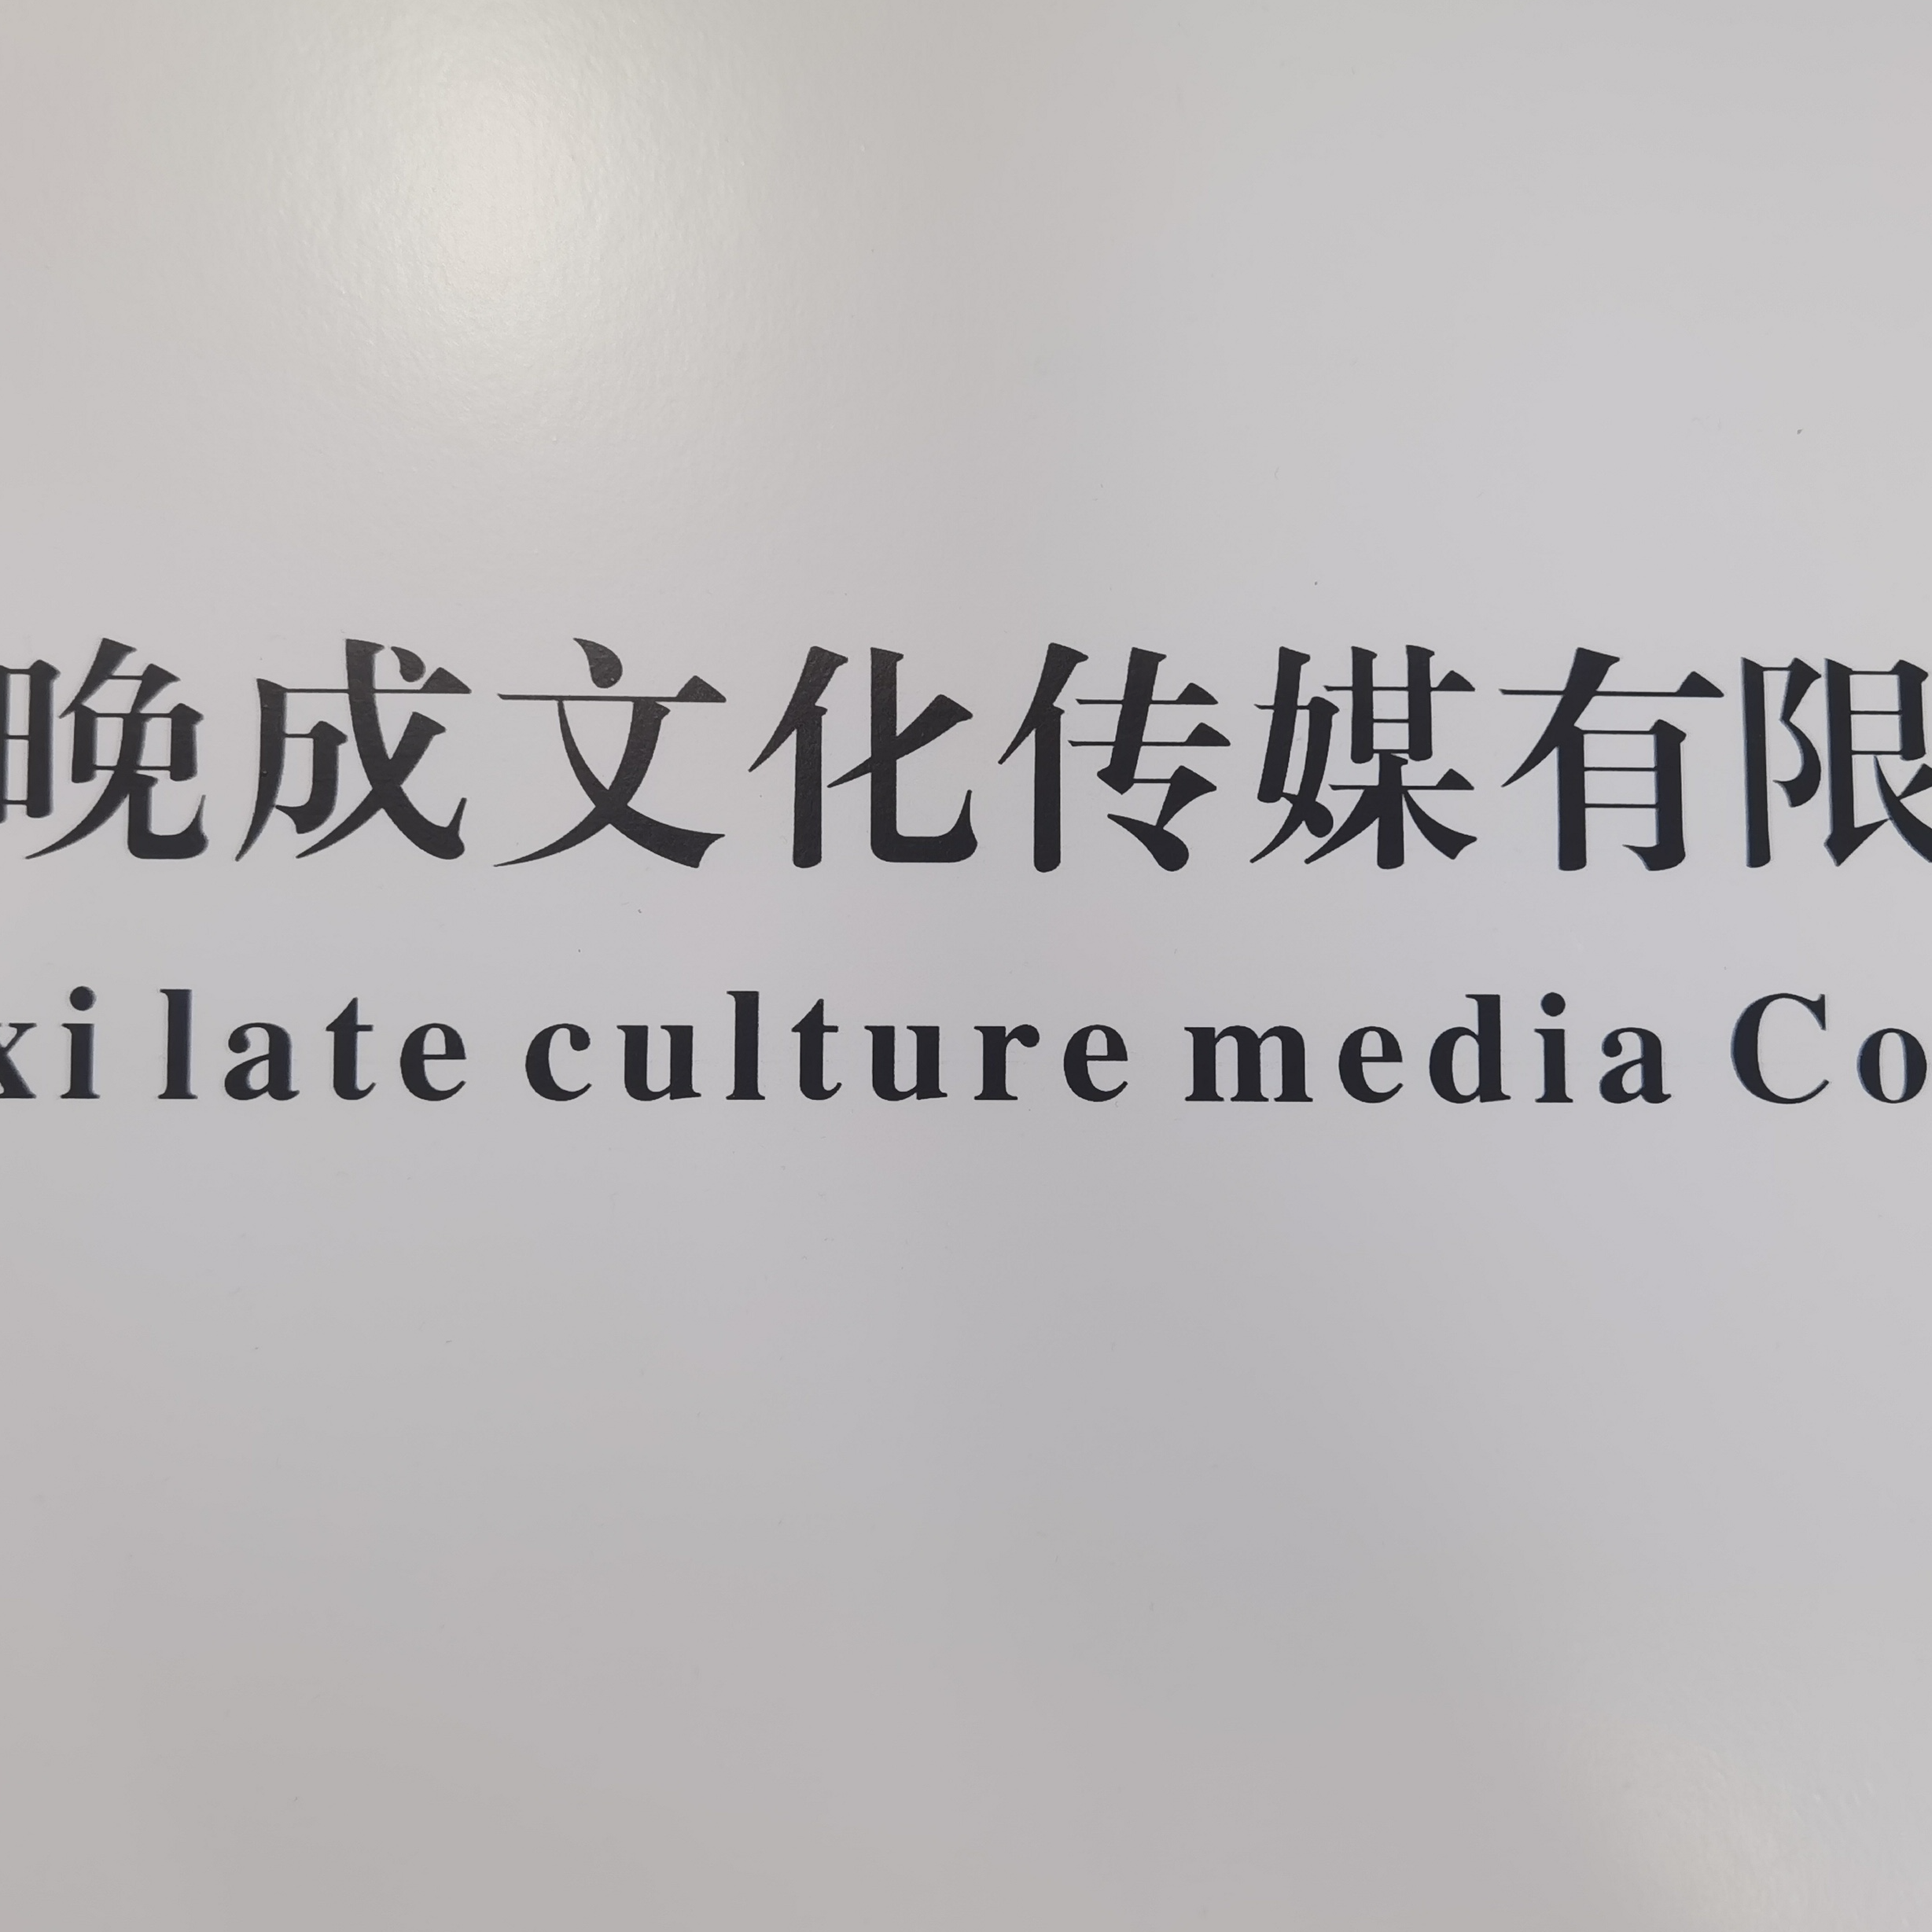 江西晚成文化传媒有限公司